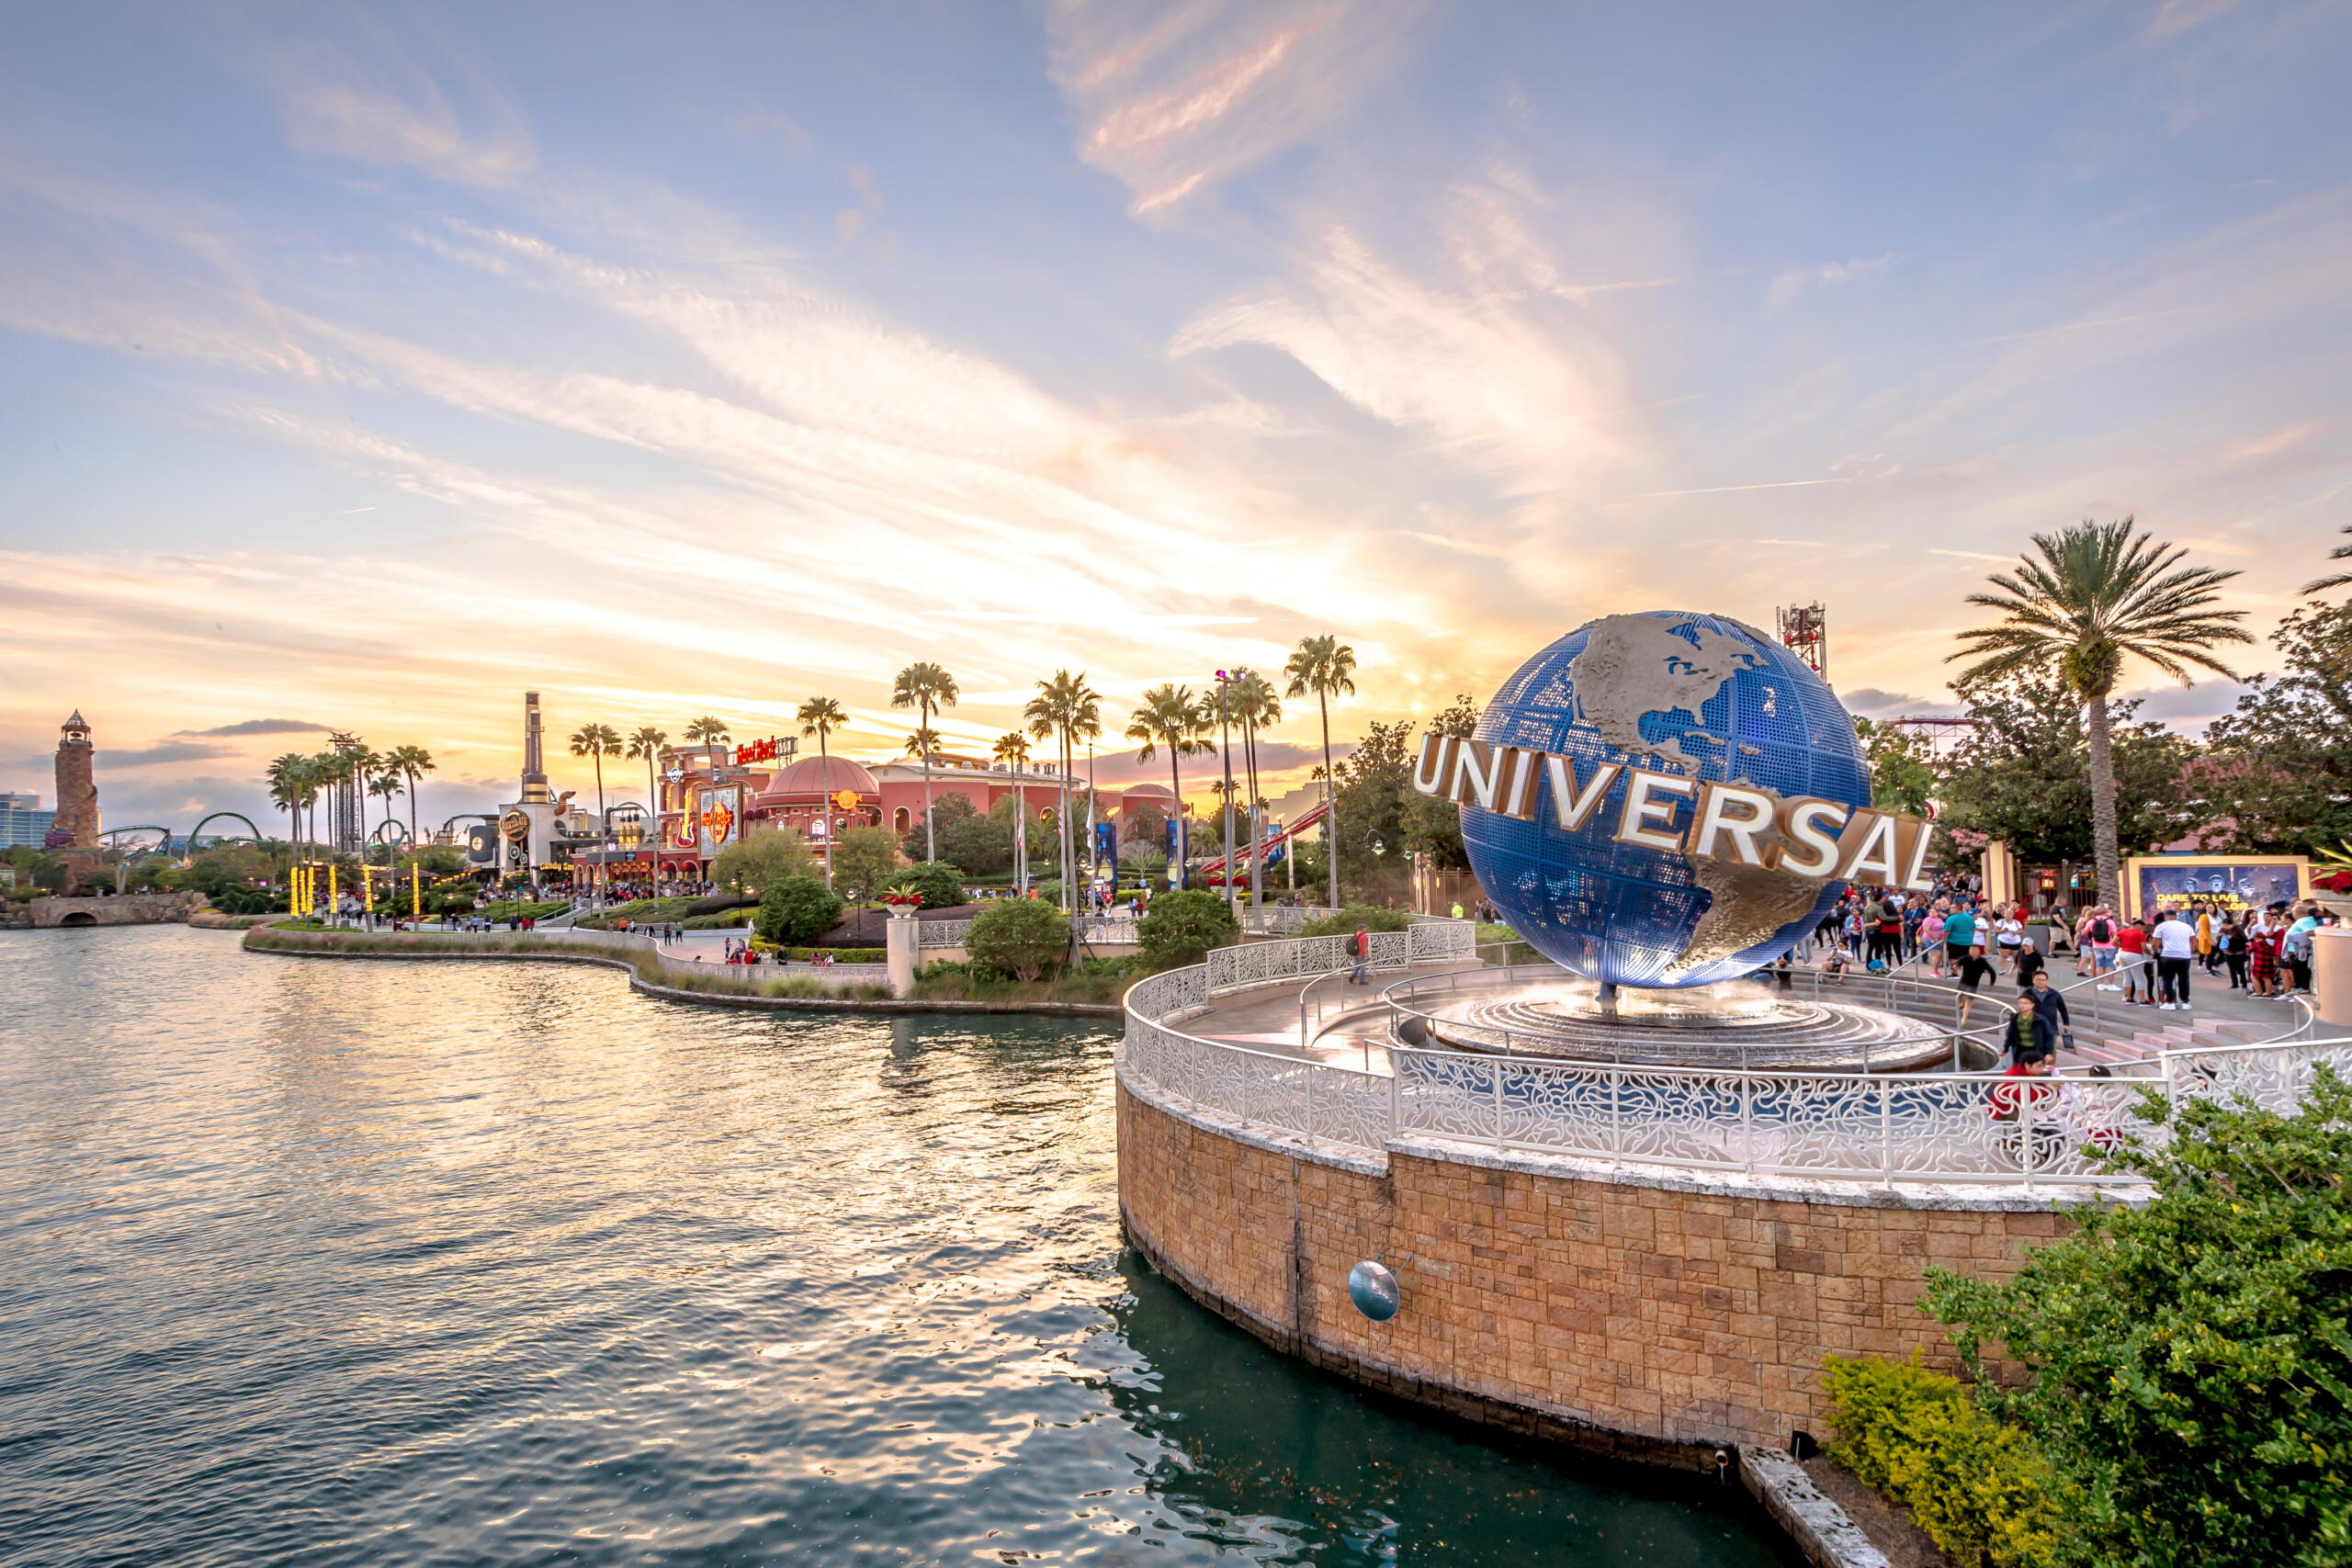 Orlando,Floryda / Stany Zjednoczone - Kula ziemska Universal Studios przy wejściu do parku rozrywki, licencja: shutterstock/By Chansak Joe